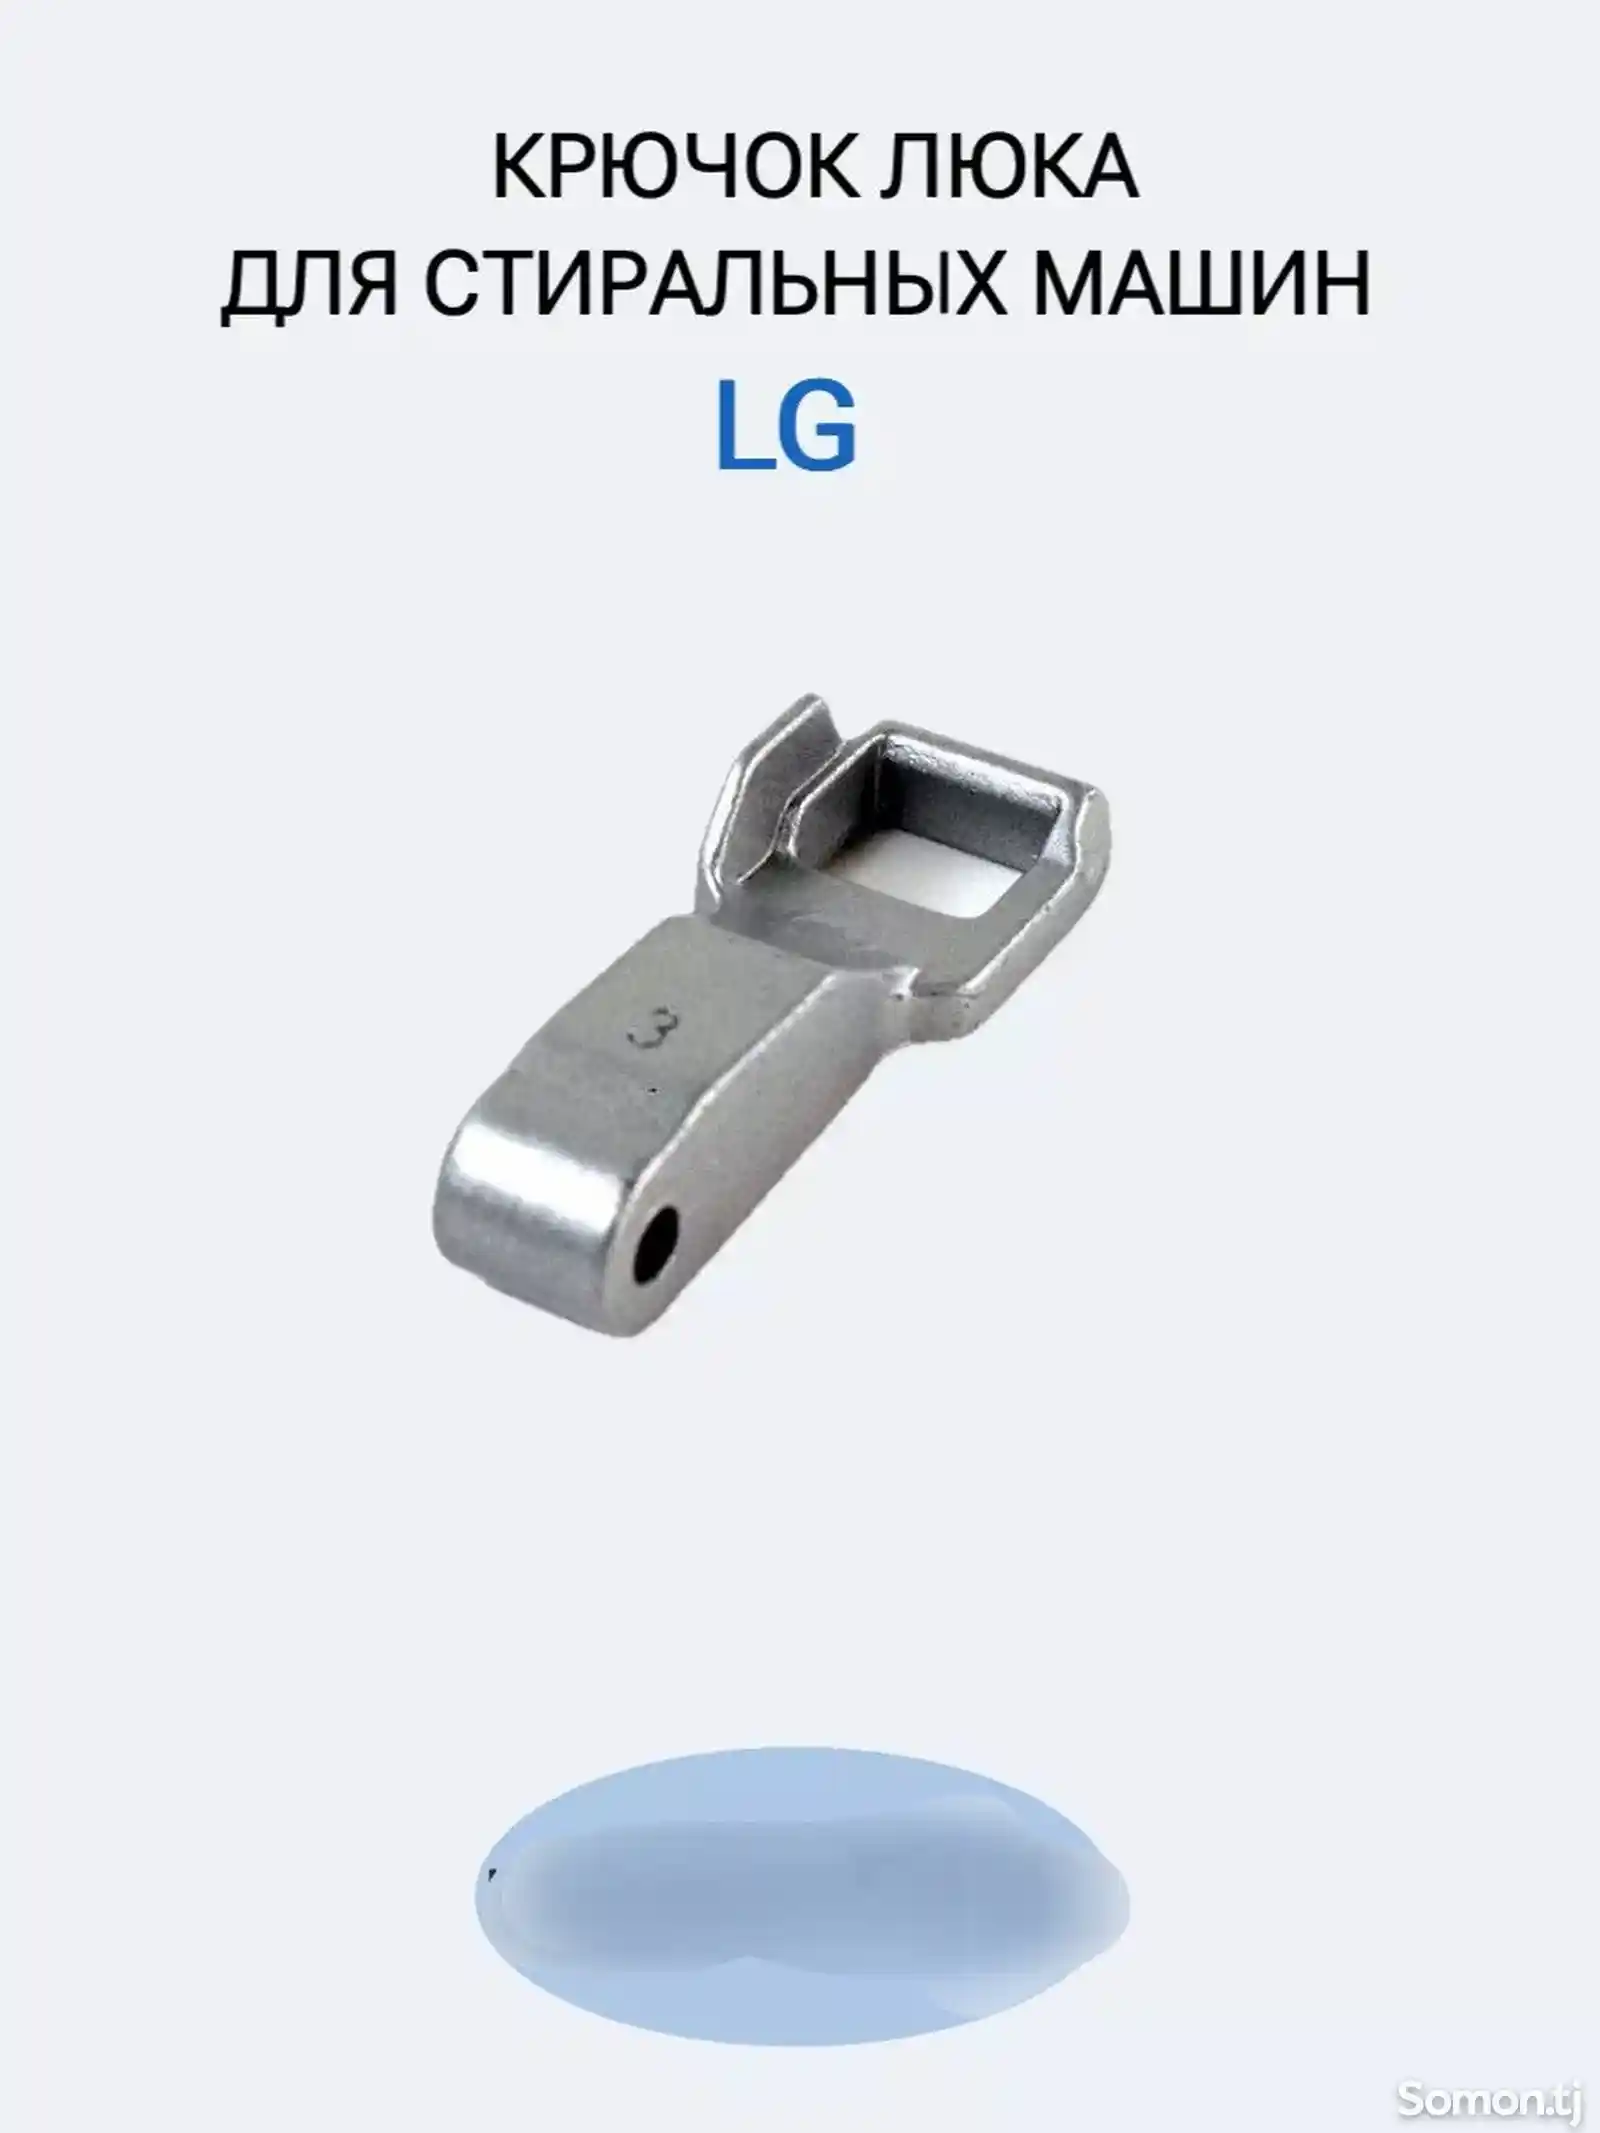 Крючок для стиральной машины LG-1